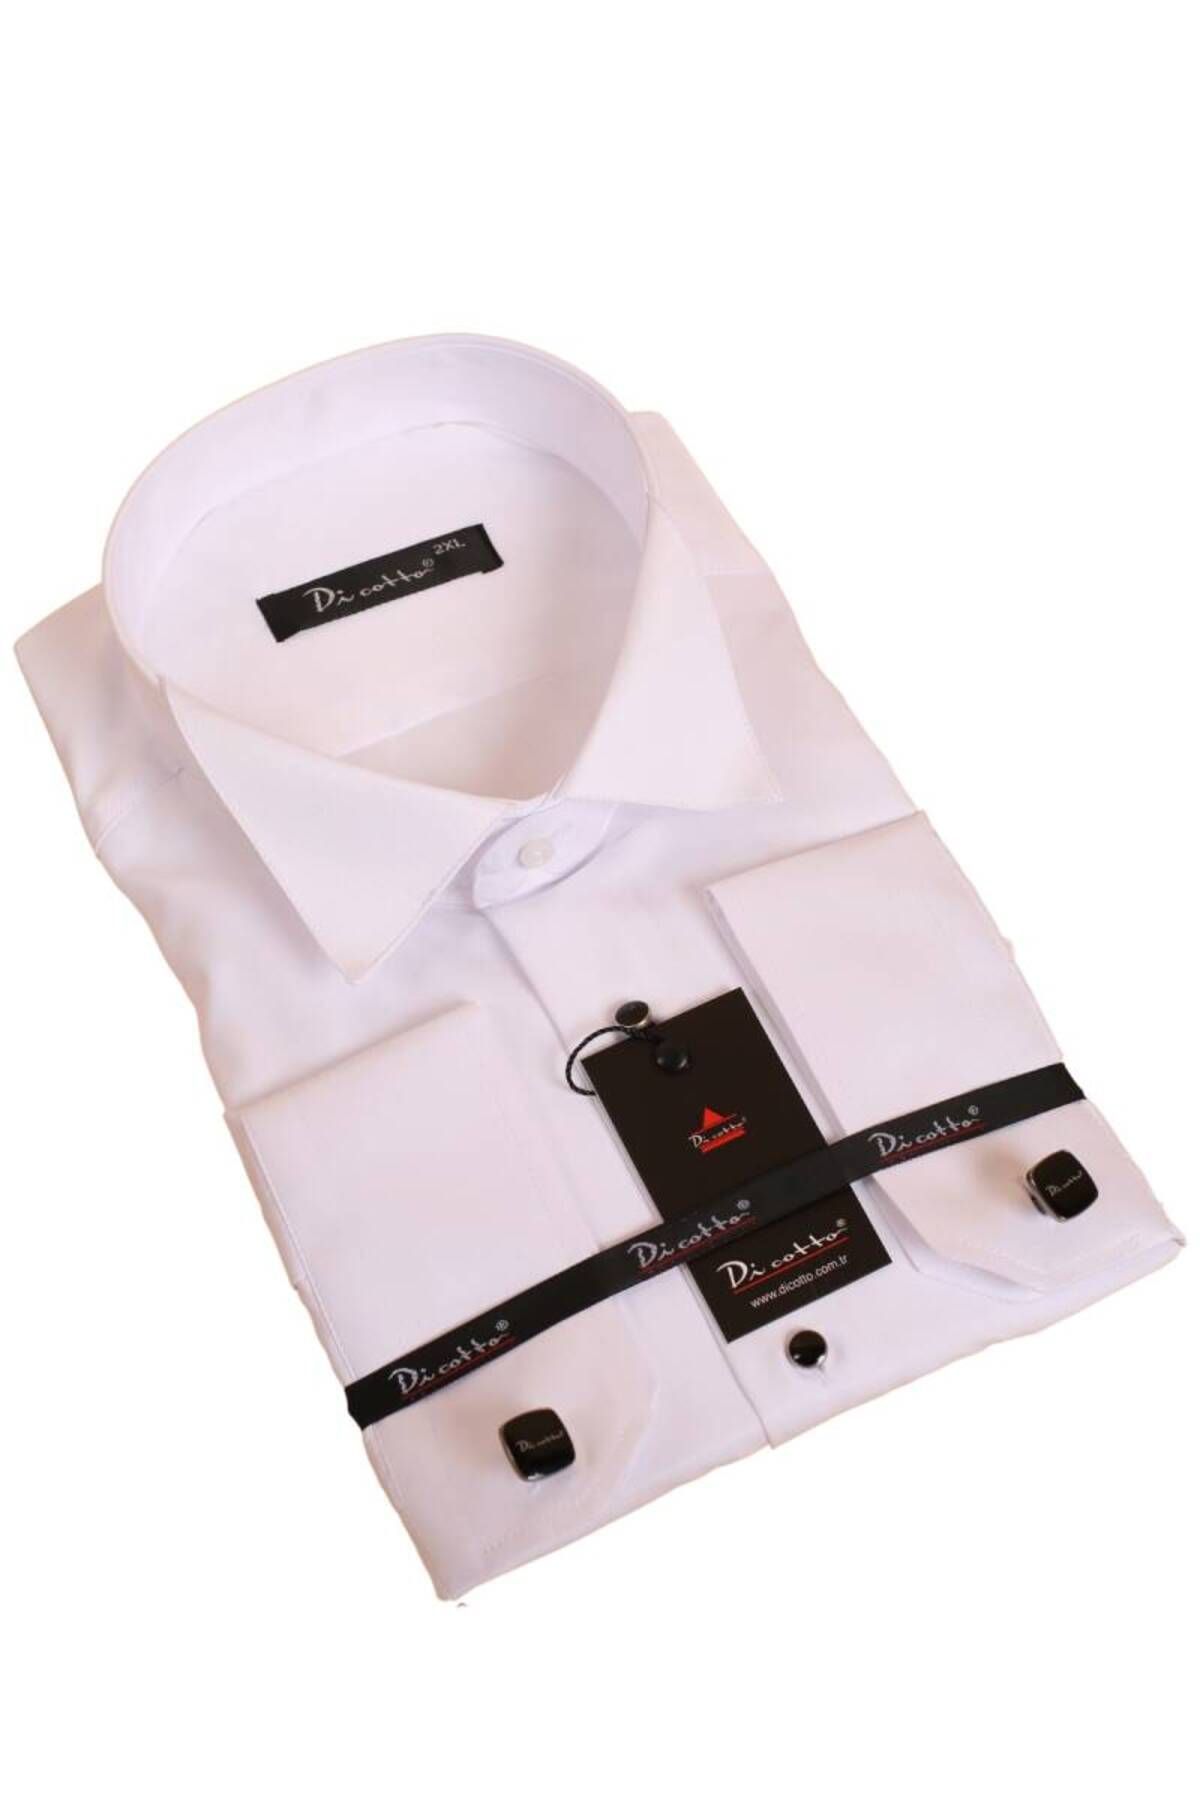 Dicotto Beyaz Büyük Beden Siyah Taş Düğmeli Damatlık Ata Yaka Kol Düğmeli Slim Fit Smokin Gömlek - 090